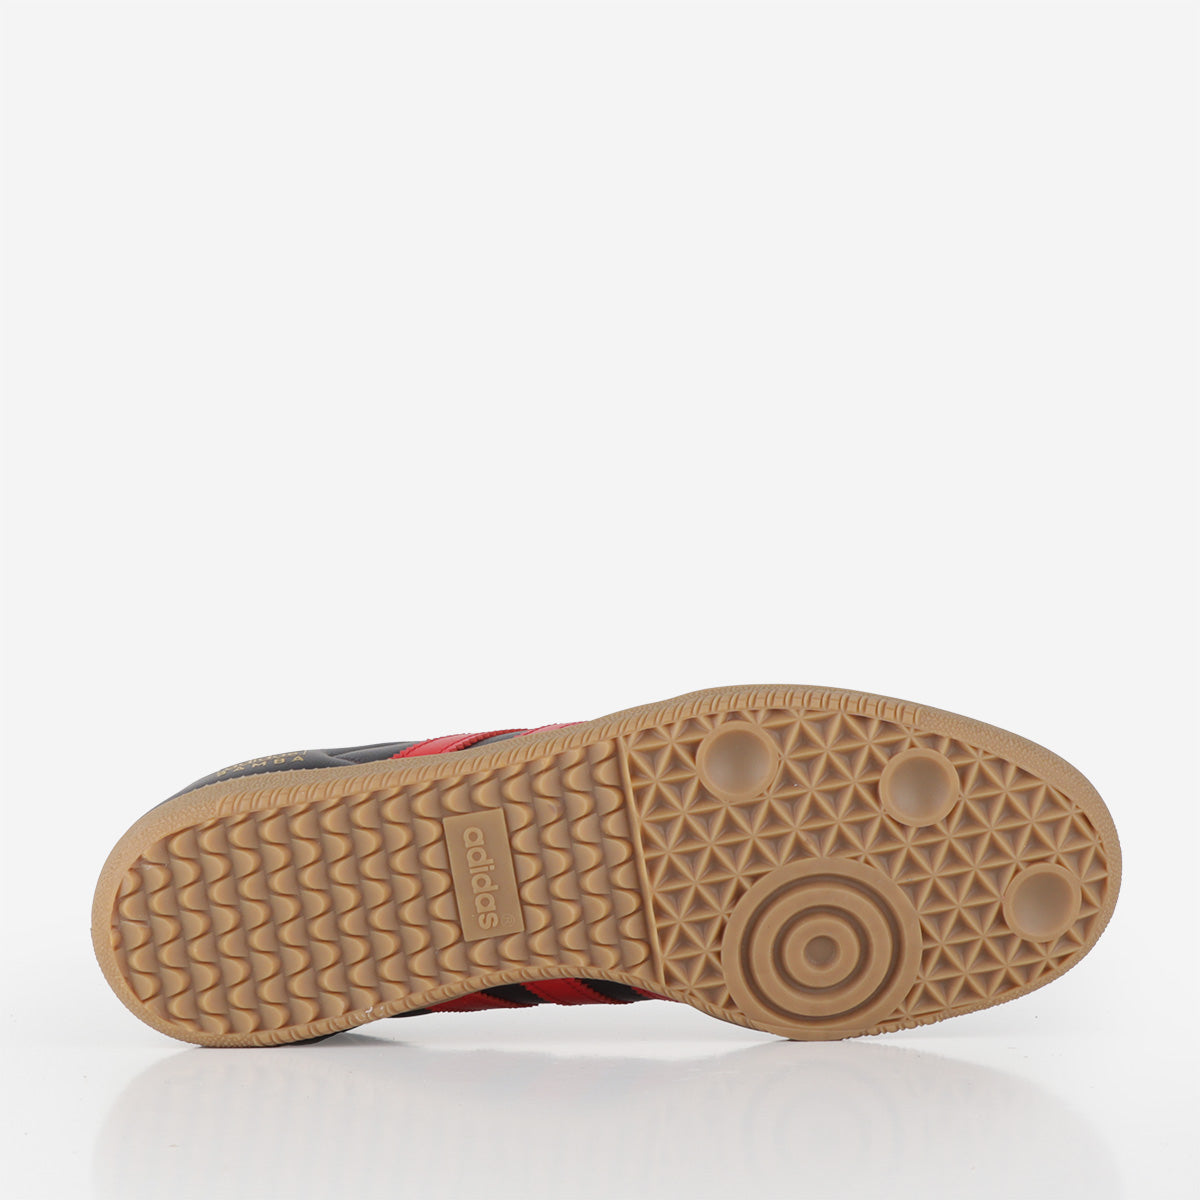 Adidas Originals Samba OG Shoes, Carbon Better Scarlet Gum 4, Detail Shot 4